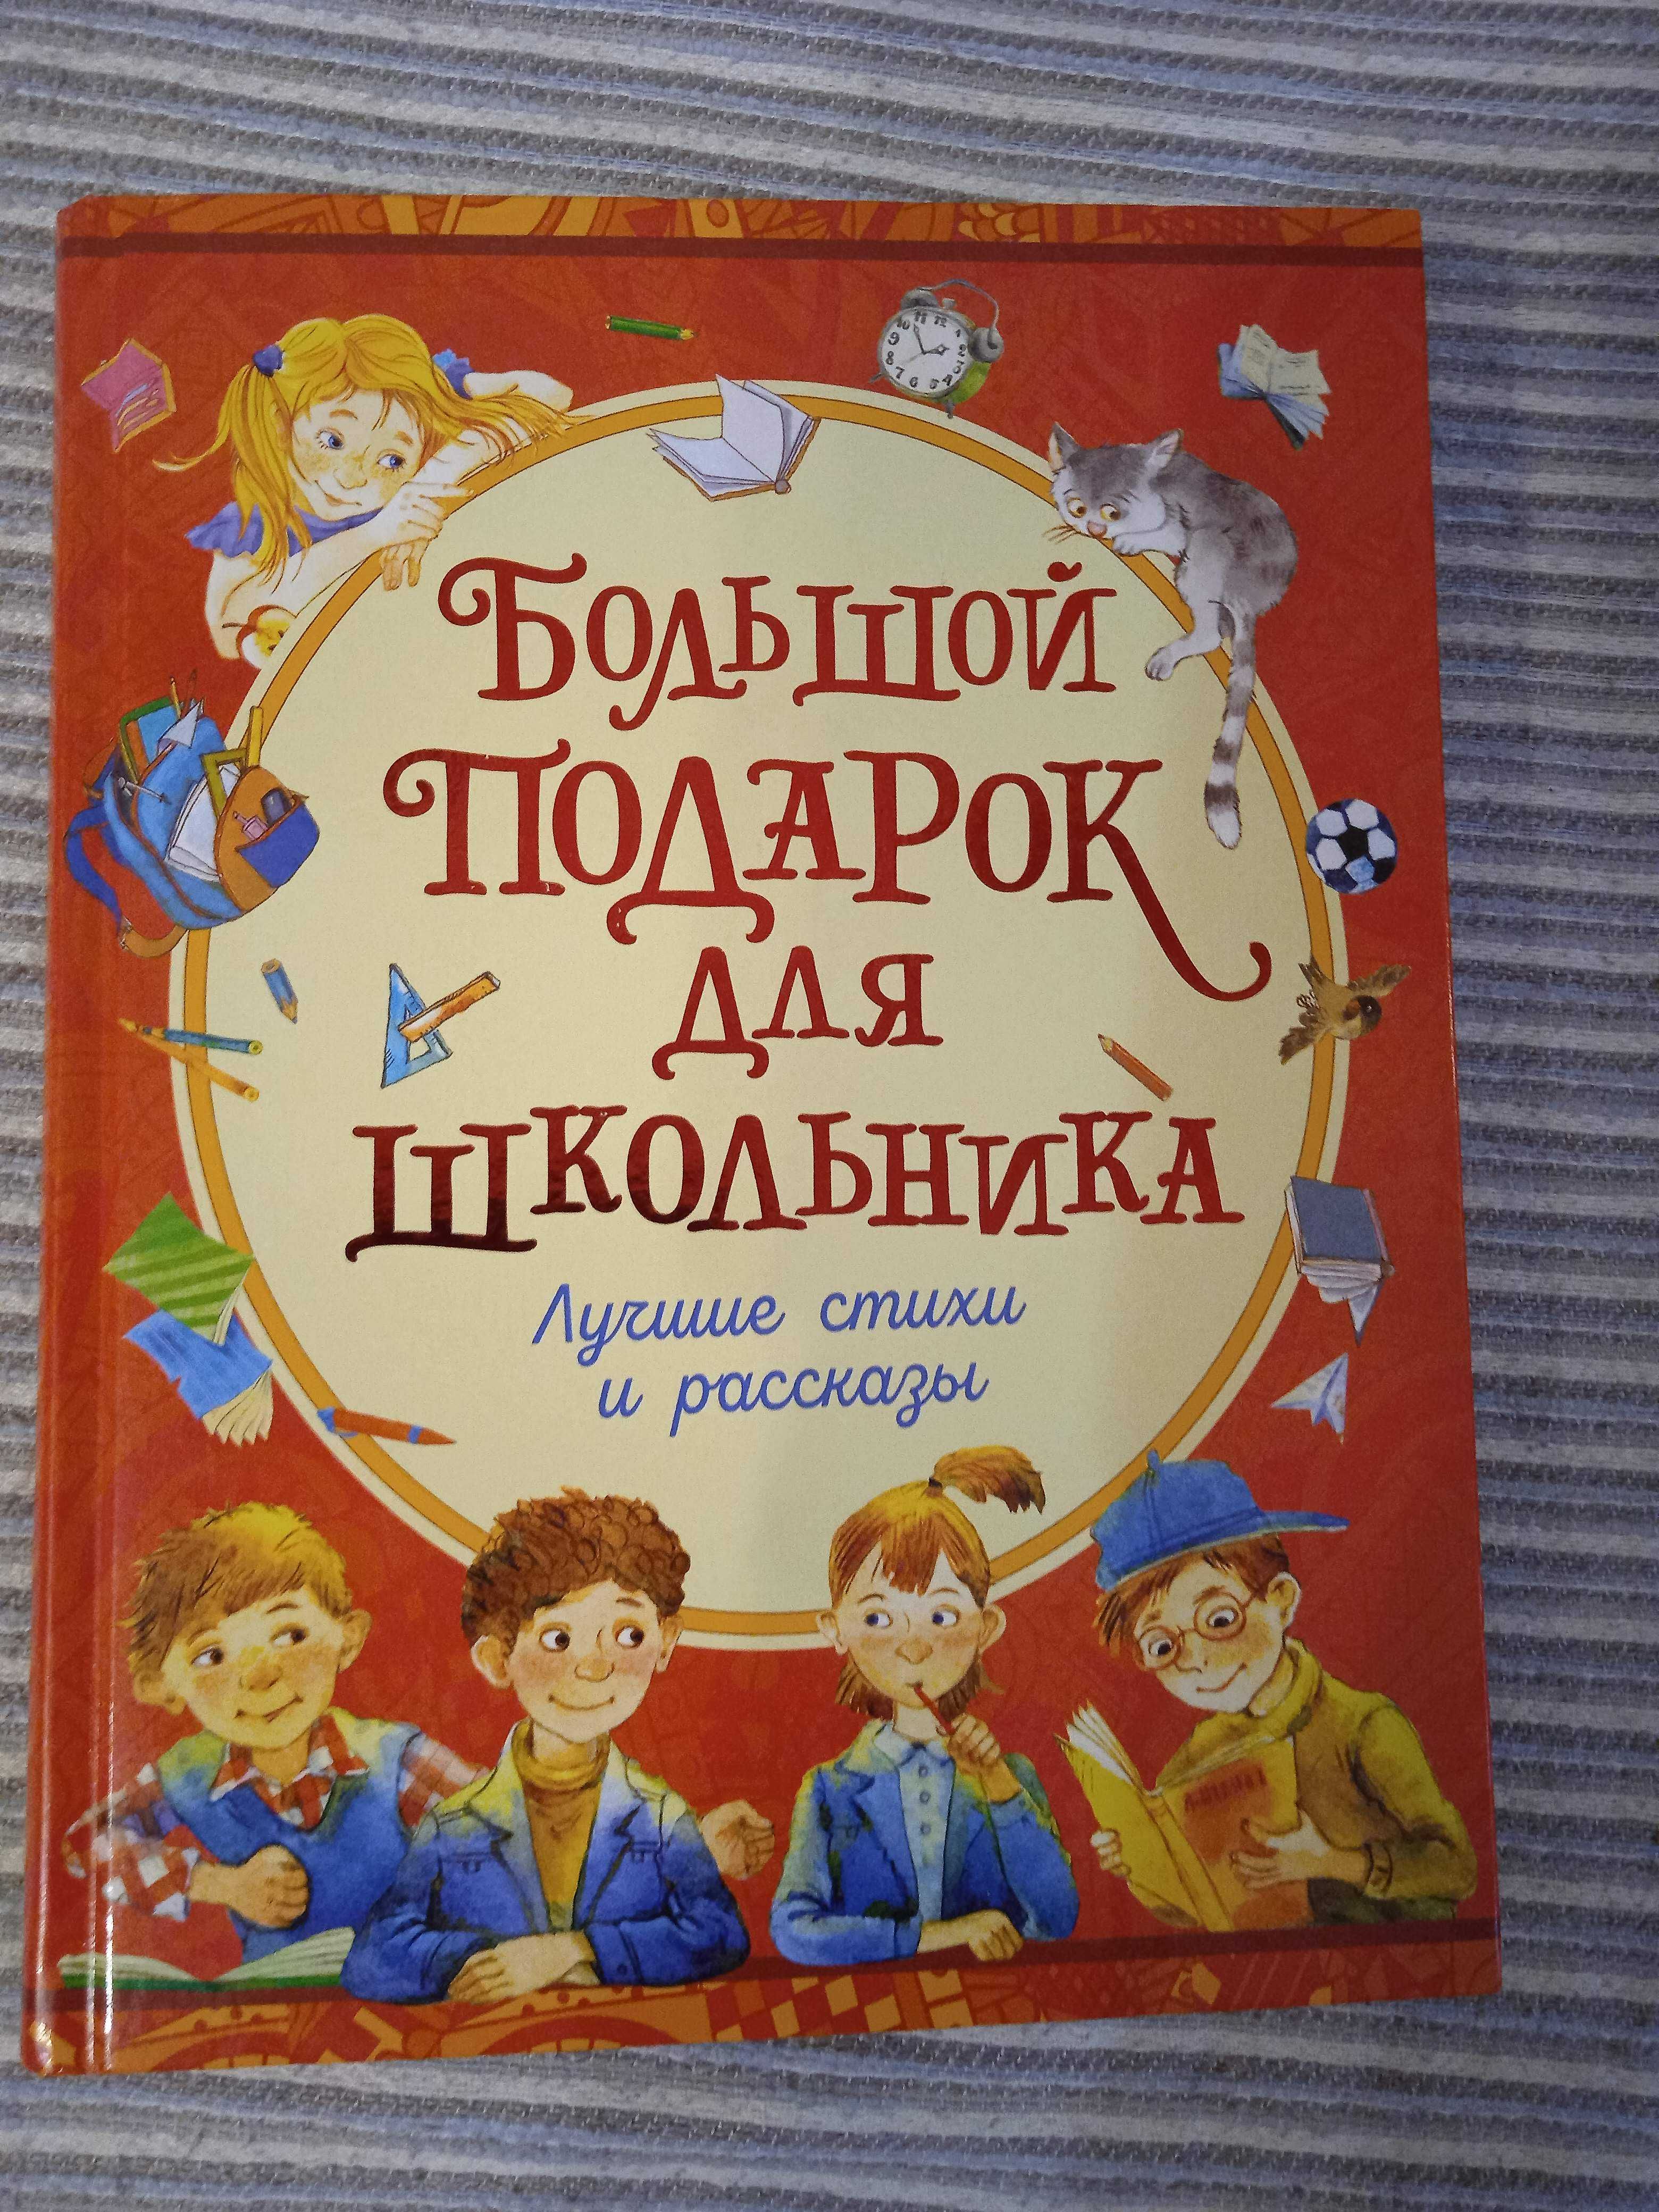 книга для школьника  " Большой подарок для школьника"